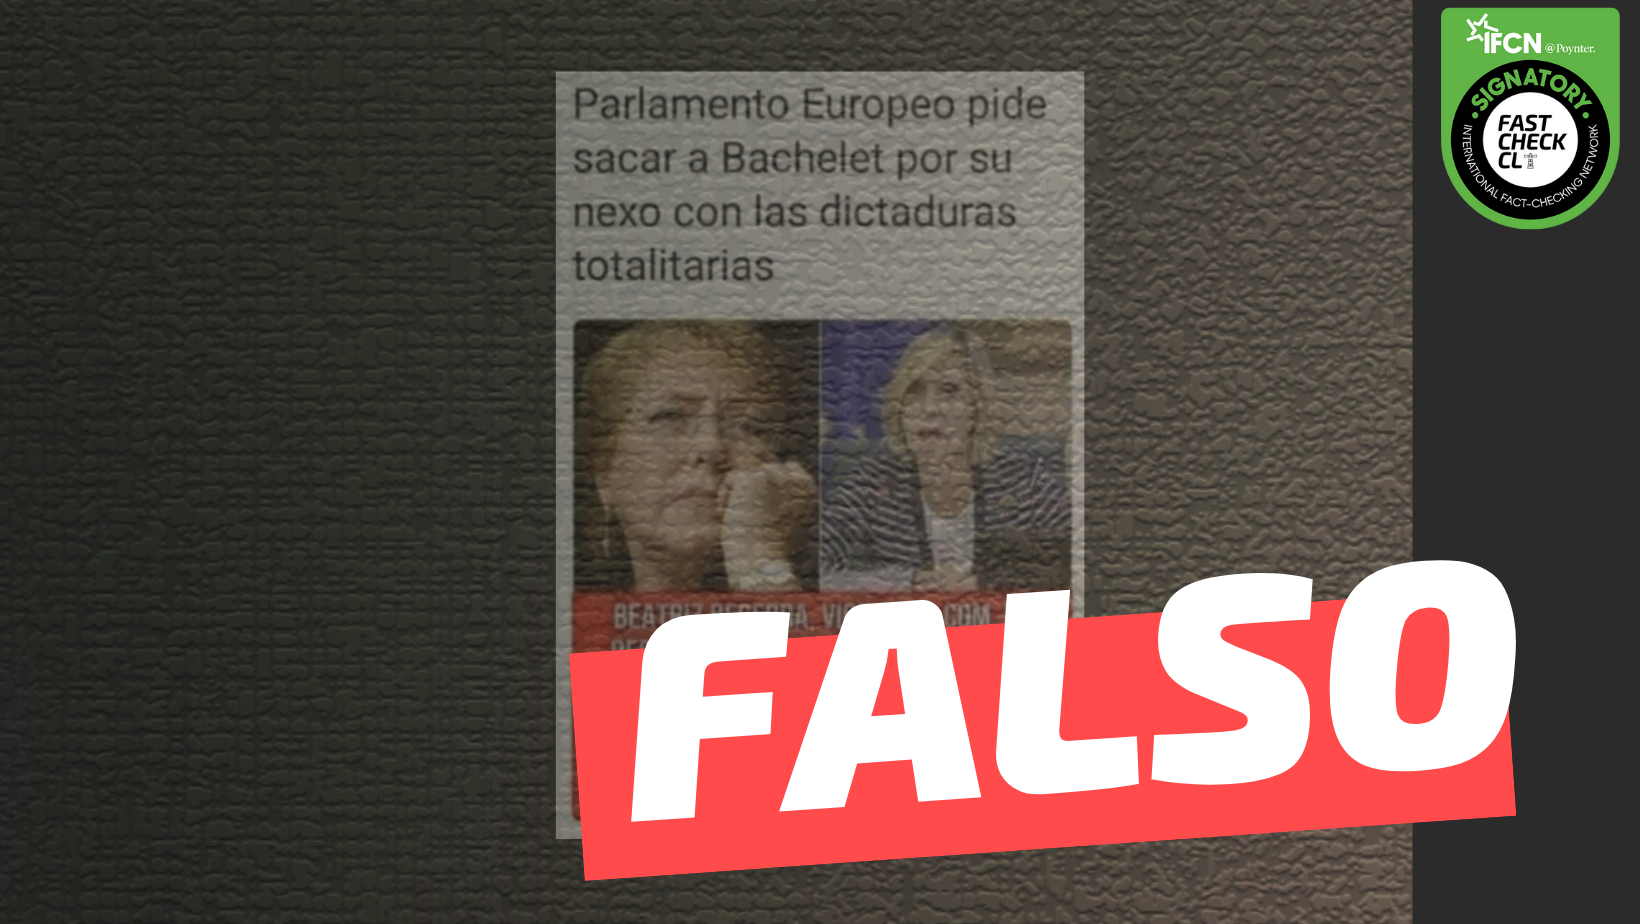 You are currently viewing “Parlamento Europeo pide sacar a Bachelet por su nexo con las dictaduras totalitarias”: #Falso